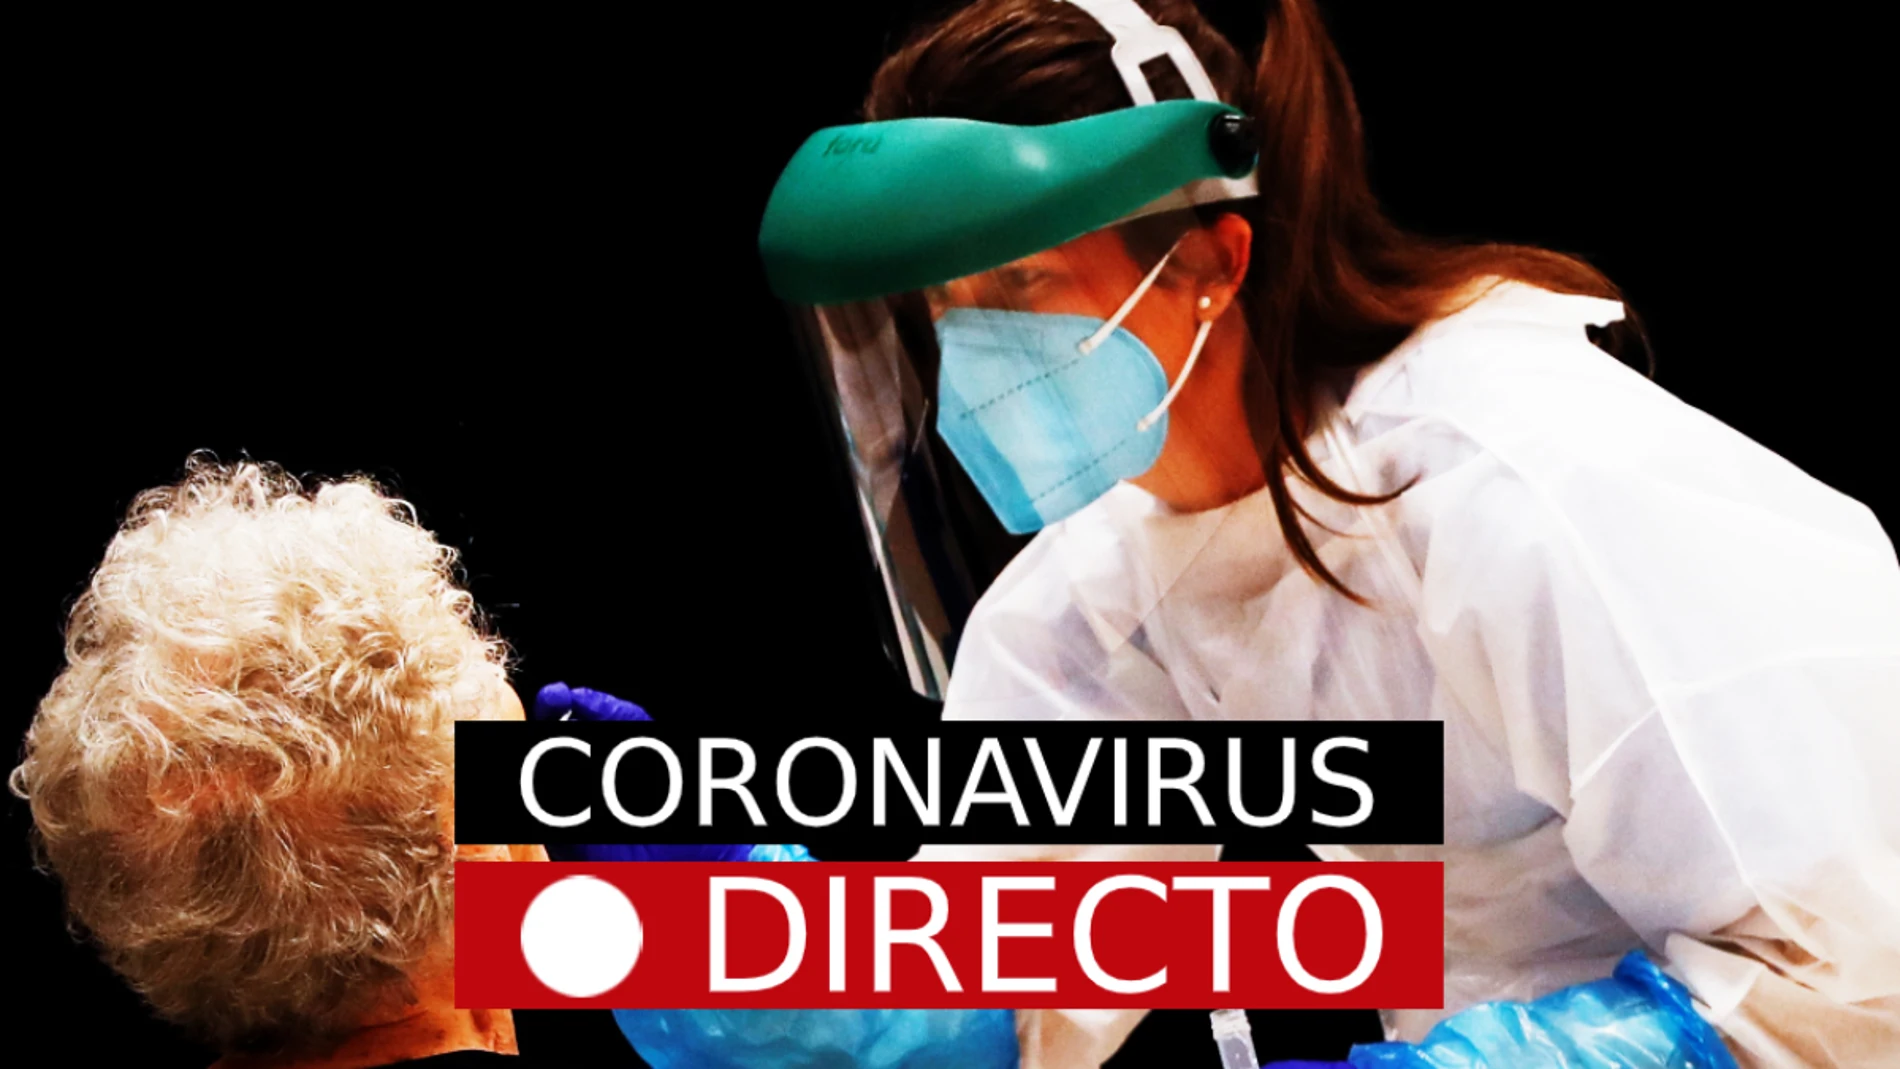 Coronavirus hoy: noticias de última hora y nuevos casos, en directo